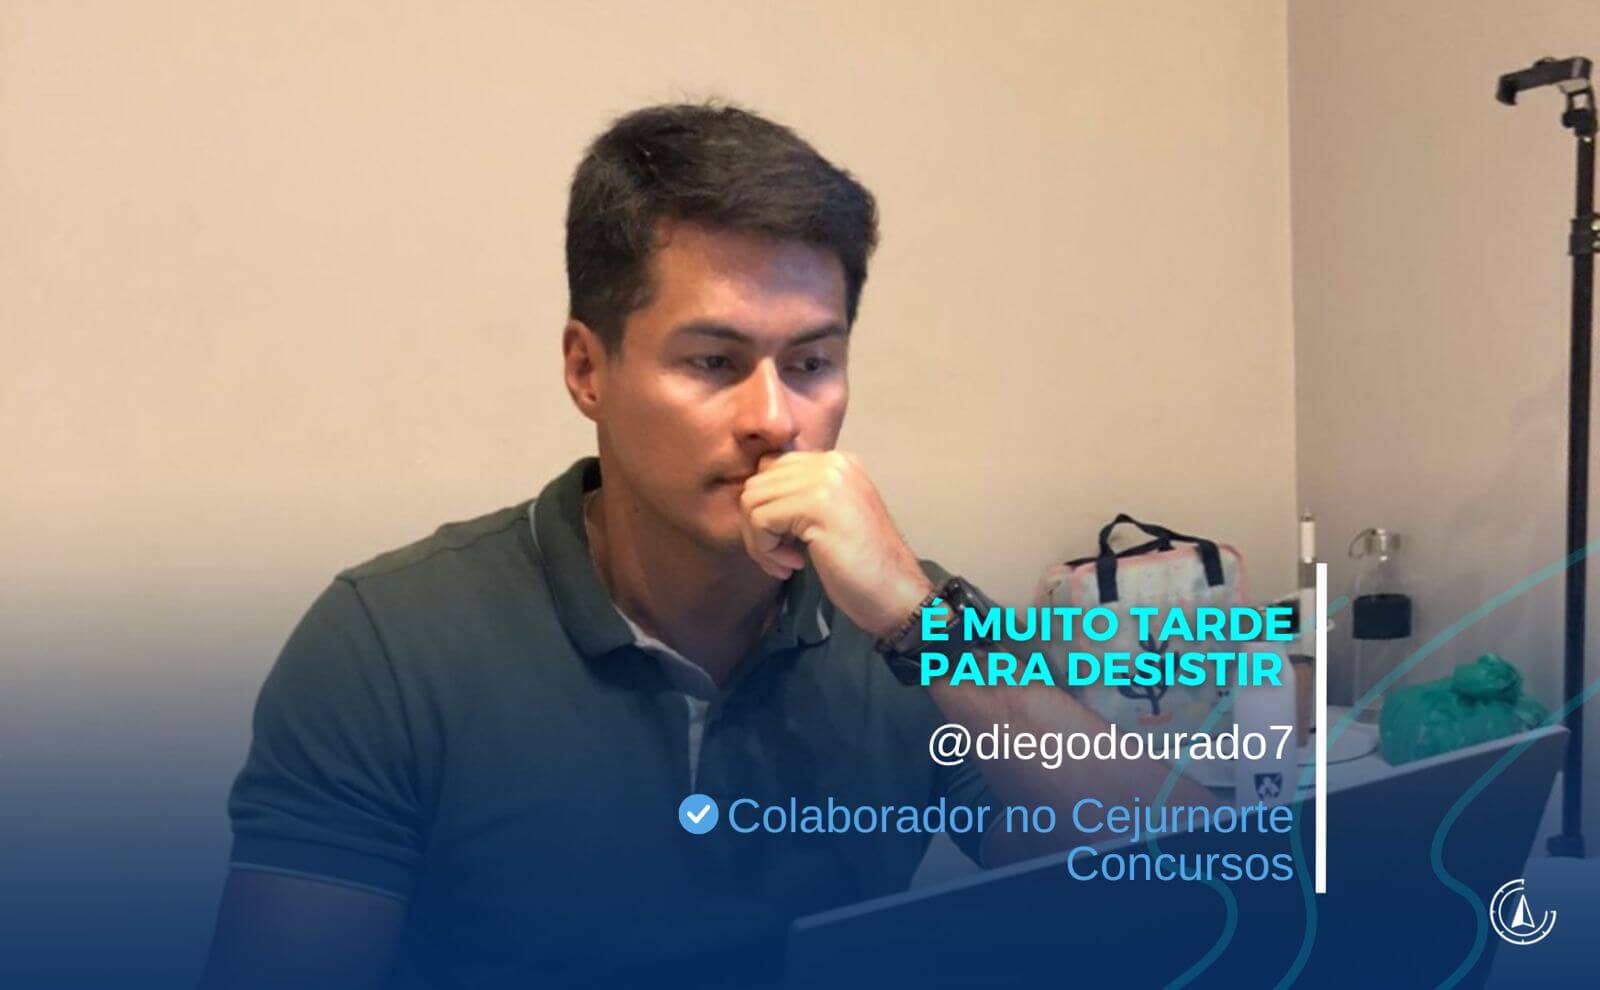 '' MUITO TARDE PARA DESISITIR'' - Por Diego Dourado